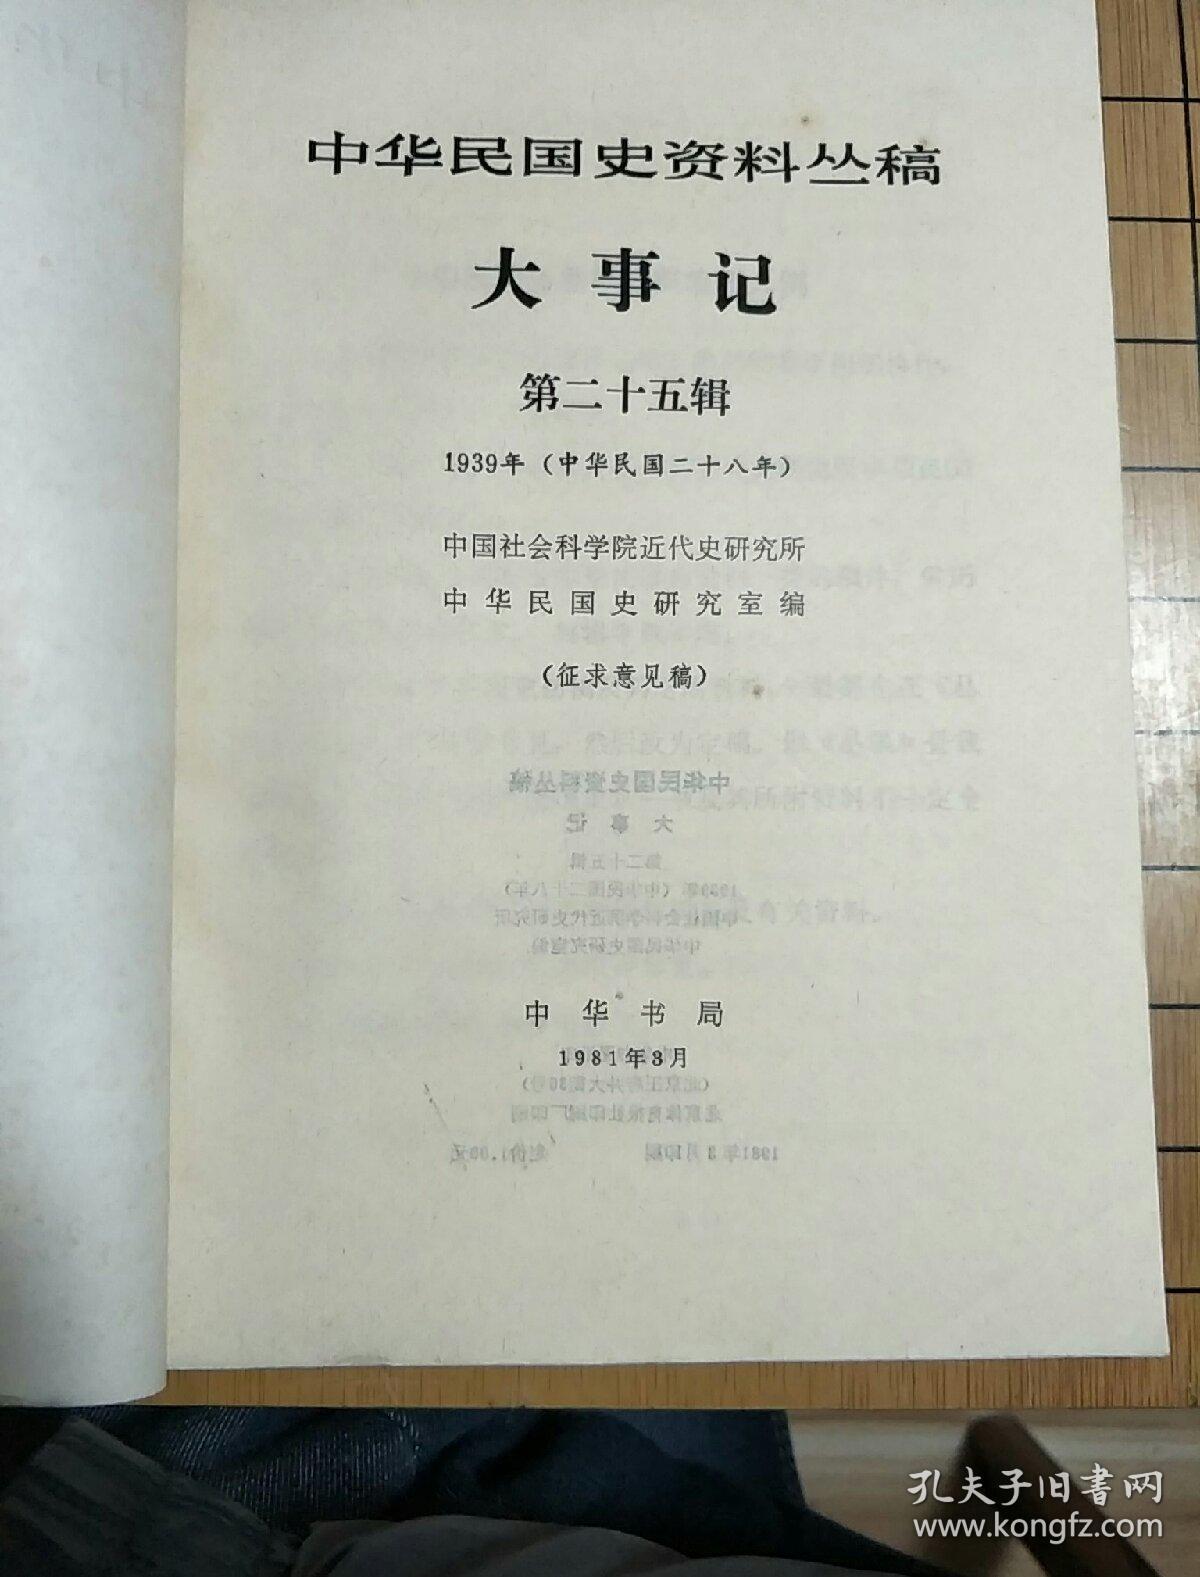 中国民国史资料丛稿——大事记第二十五辑1939年(中华民国二十八年)